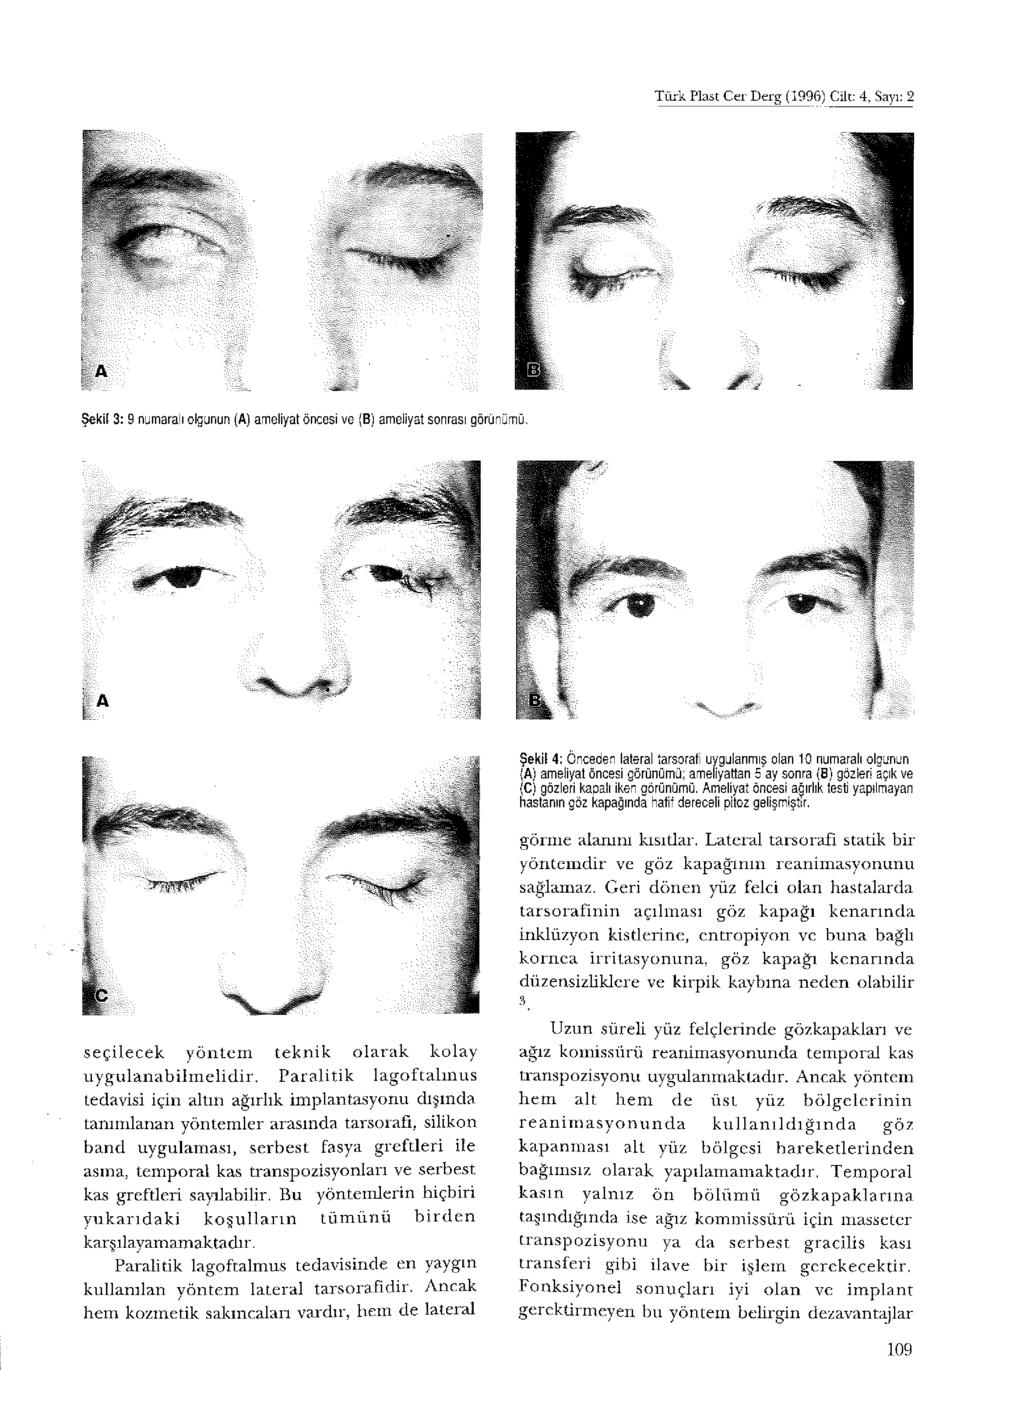 Türk Plast Cer Derg (1996) Cilt: 4, Sayı: 2 Şekil 4: Önceden lateral tarsorafi uygulanmış olan 10 numaralı olgunun (A) ameliyat öncesi görünümü; ameliyattan 5 ay sonra (8) gözleri açık ve (C) gözleri